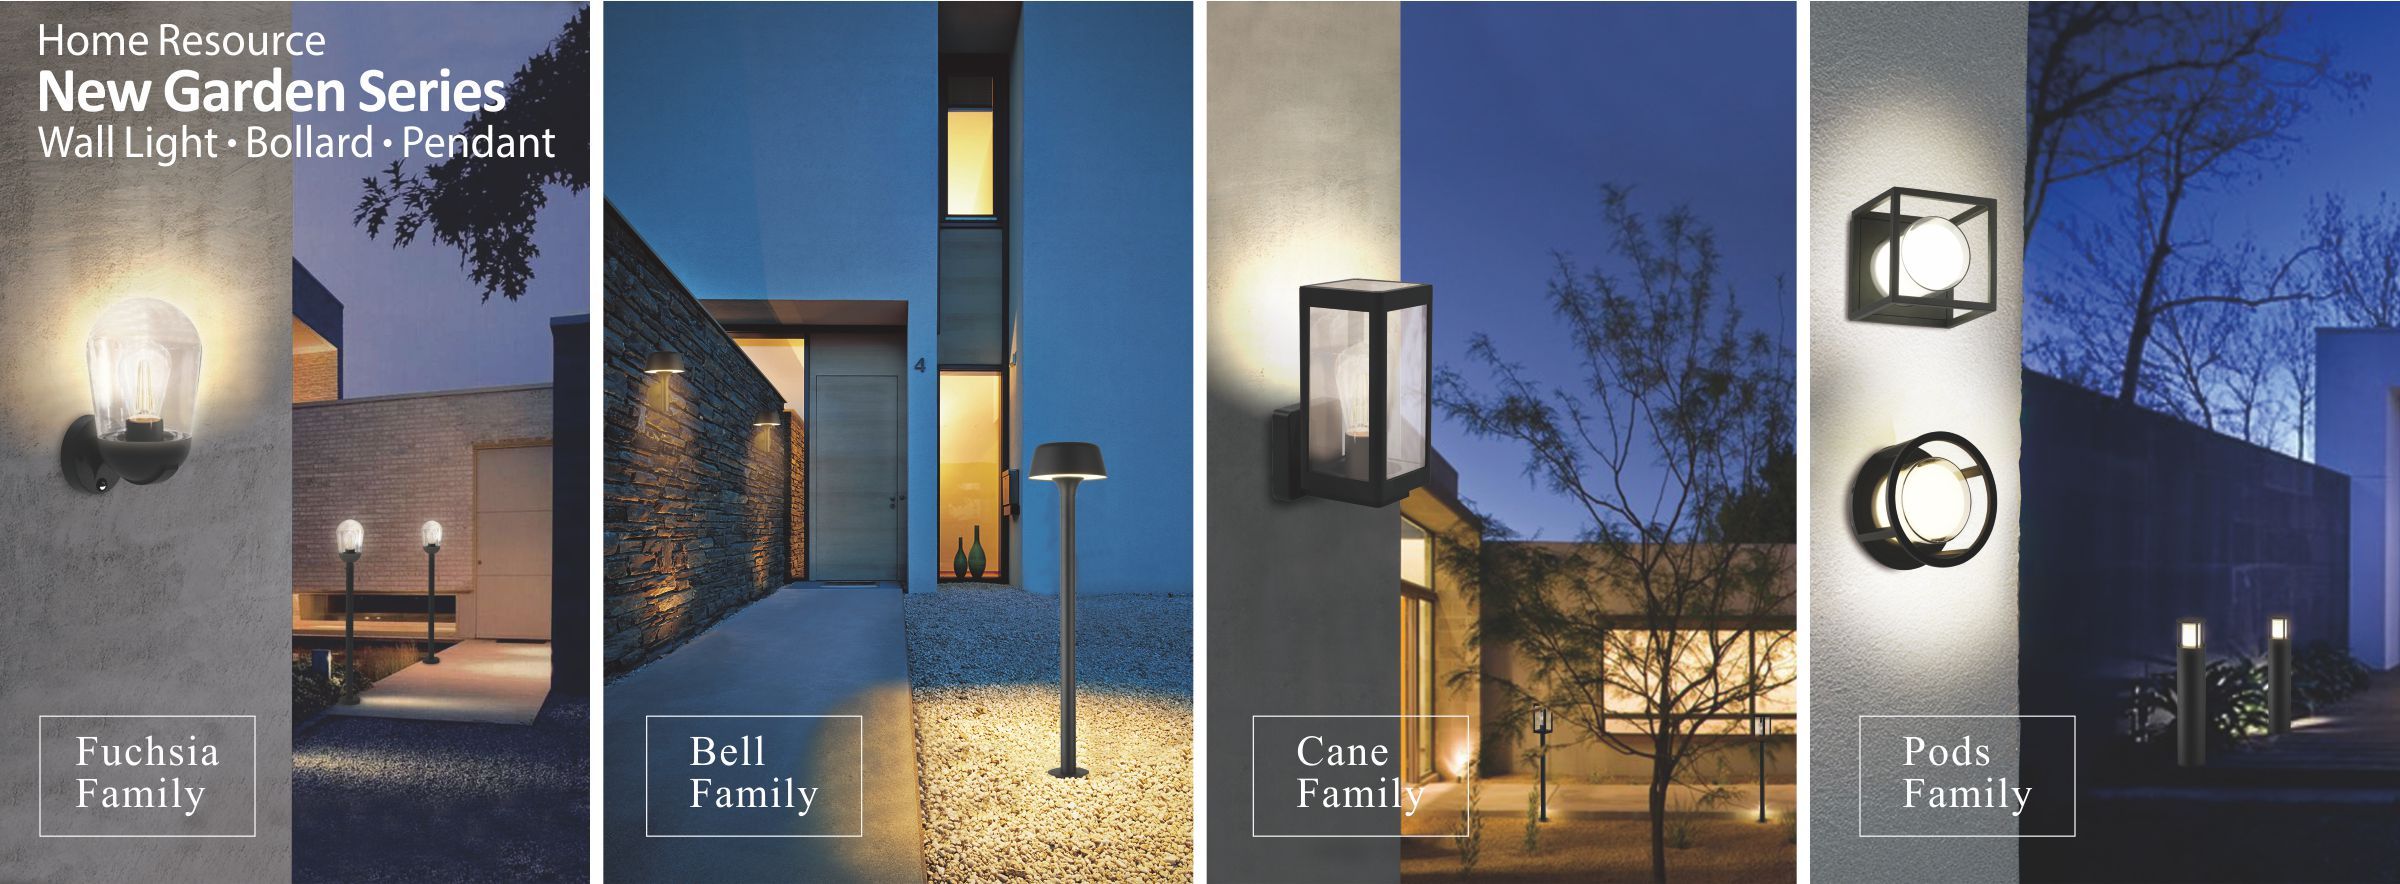 屋外照明および屋内照明用のLED照明ソリューション。 | Home Resource